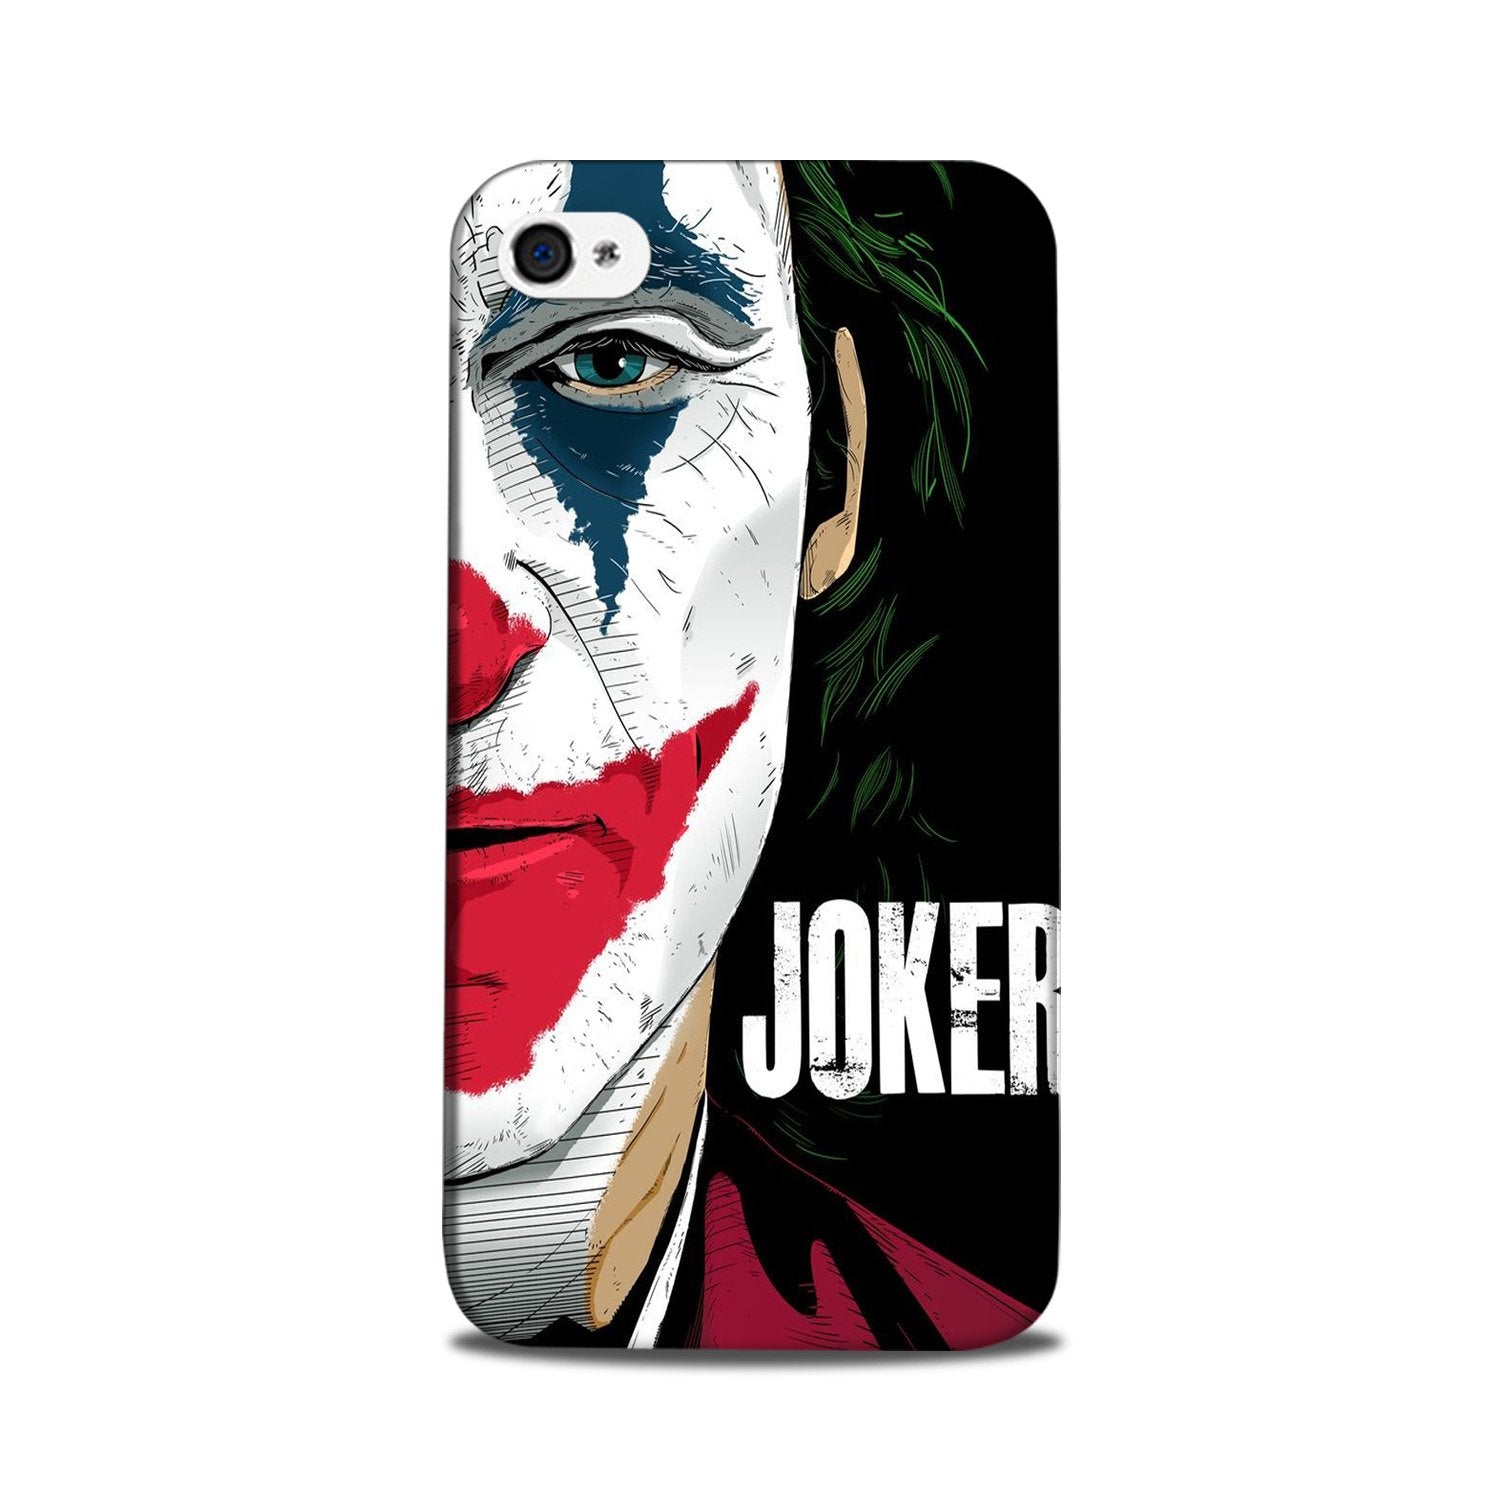 Joker Mobile Back Case for iPhone 5/ 5s  (Design - 301)